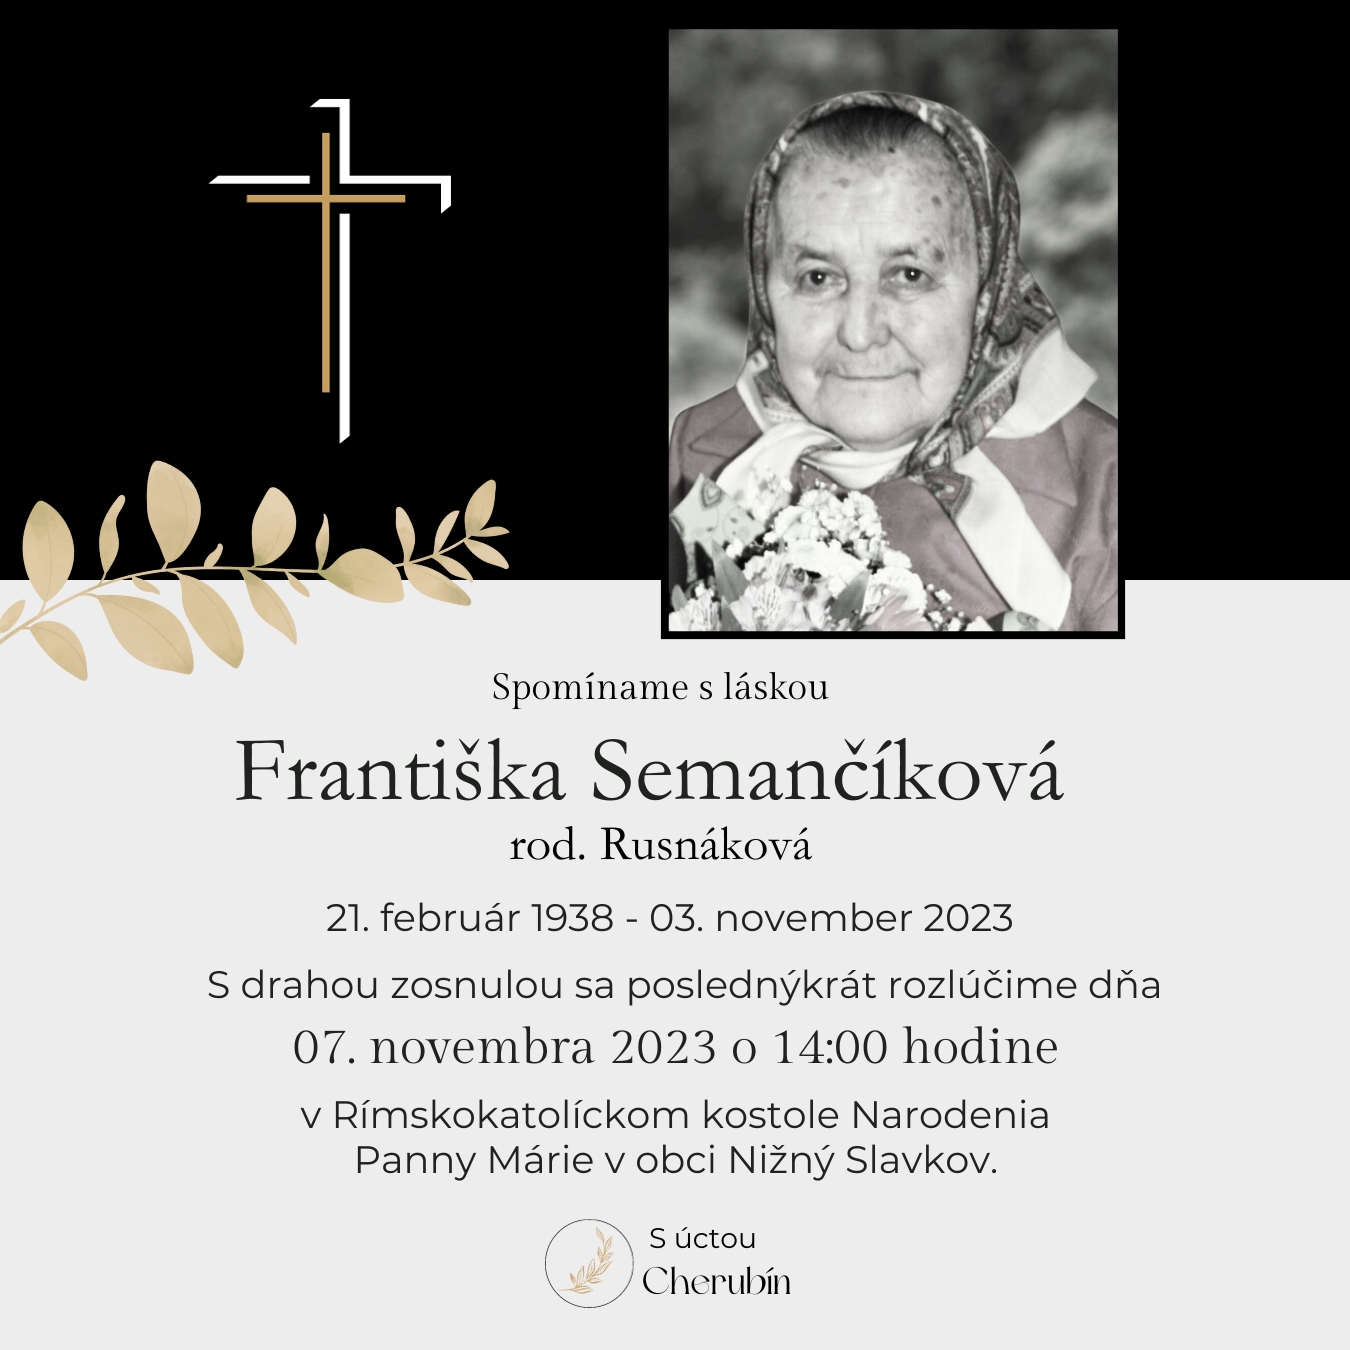 Františka Semančíková